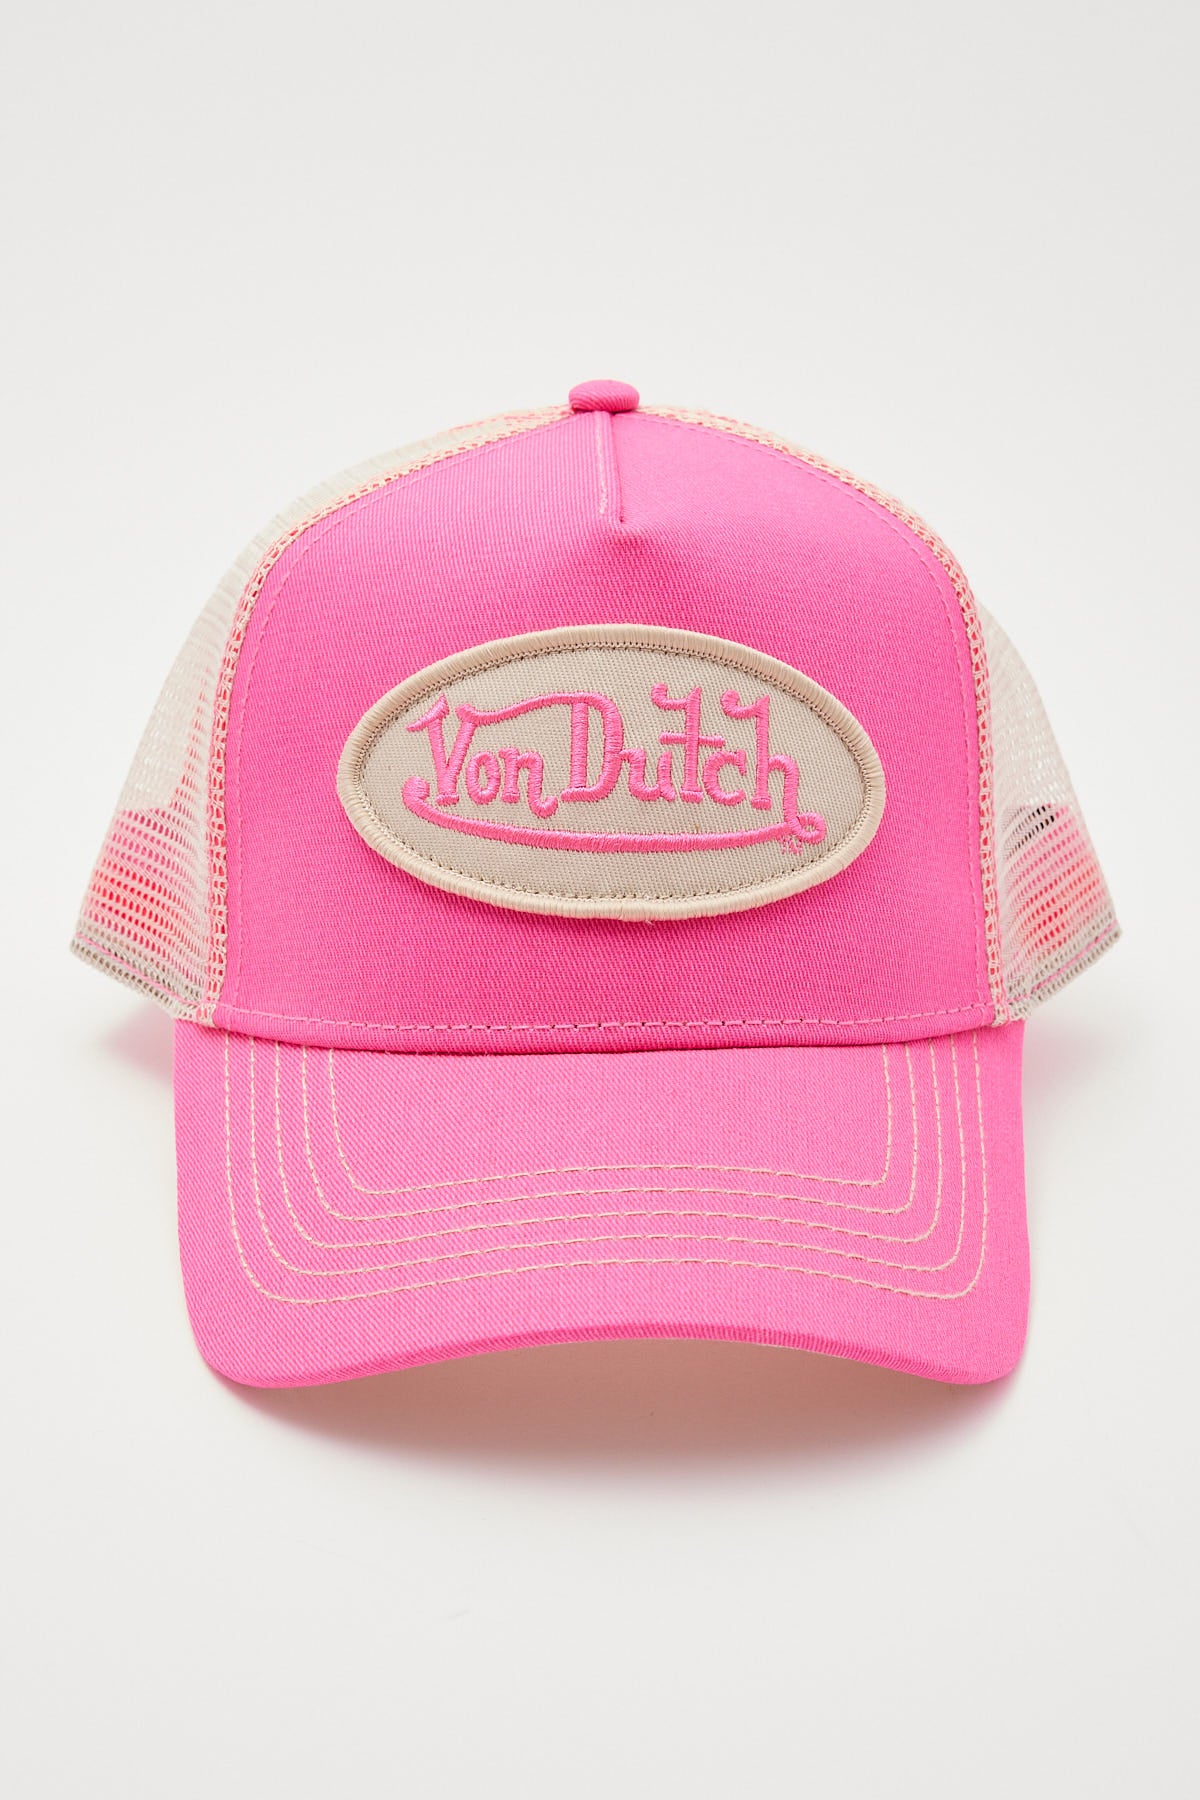 Von Dutch Pink Khaki Cream Trucker Pink/Cream Khaki